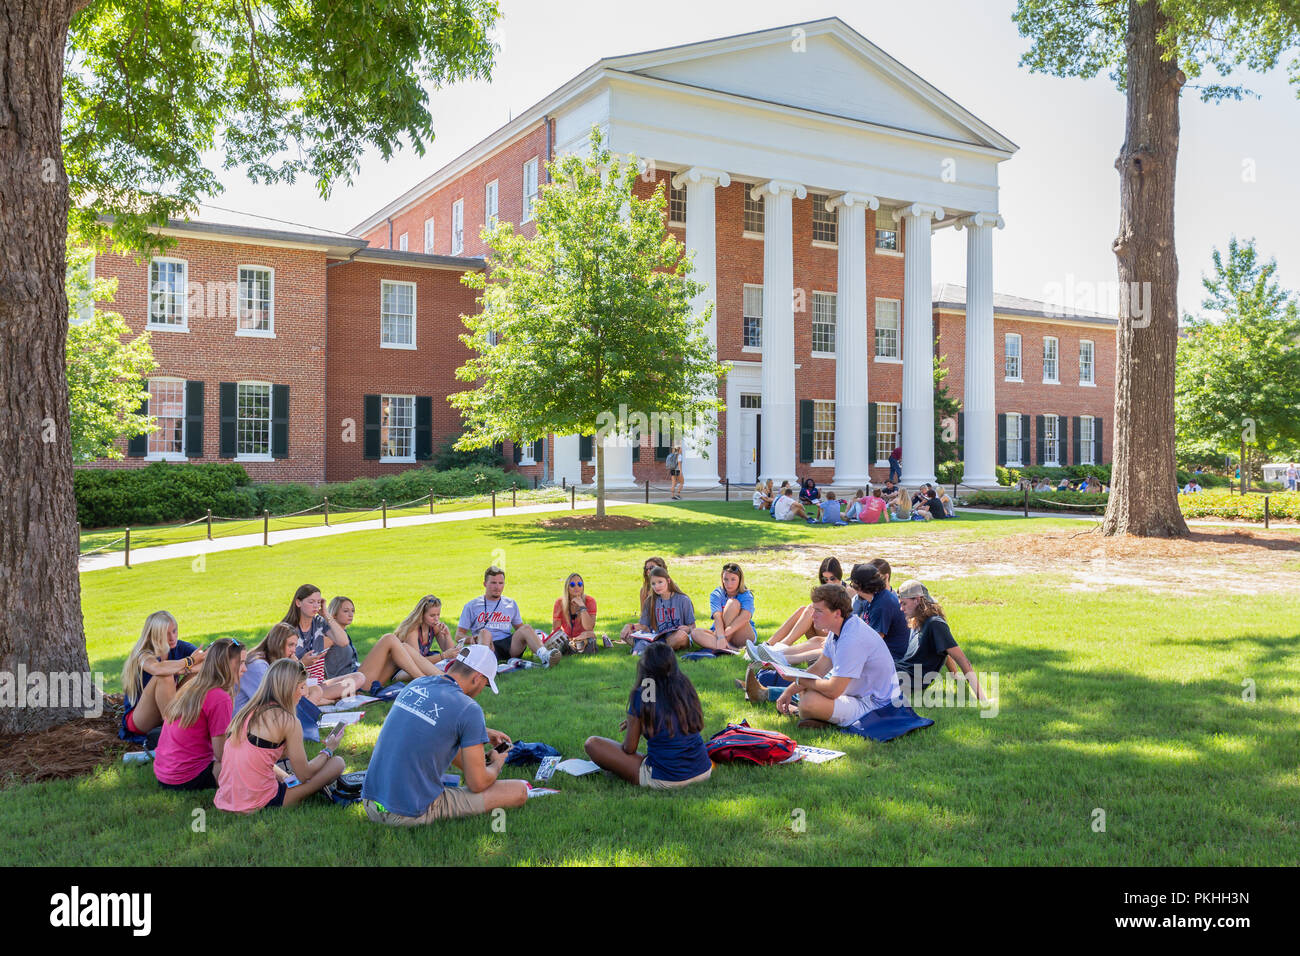 OXFORD, MS/USA - Juni 7, 2018: Nicht identifizierte Personen versammelten sich auf dem Campus der Universität von Mississippi. Stockfoto